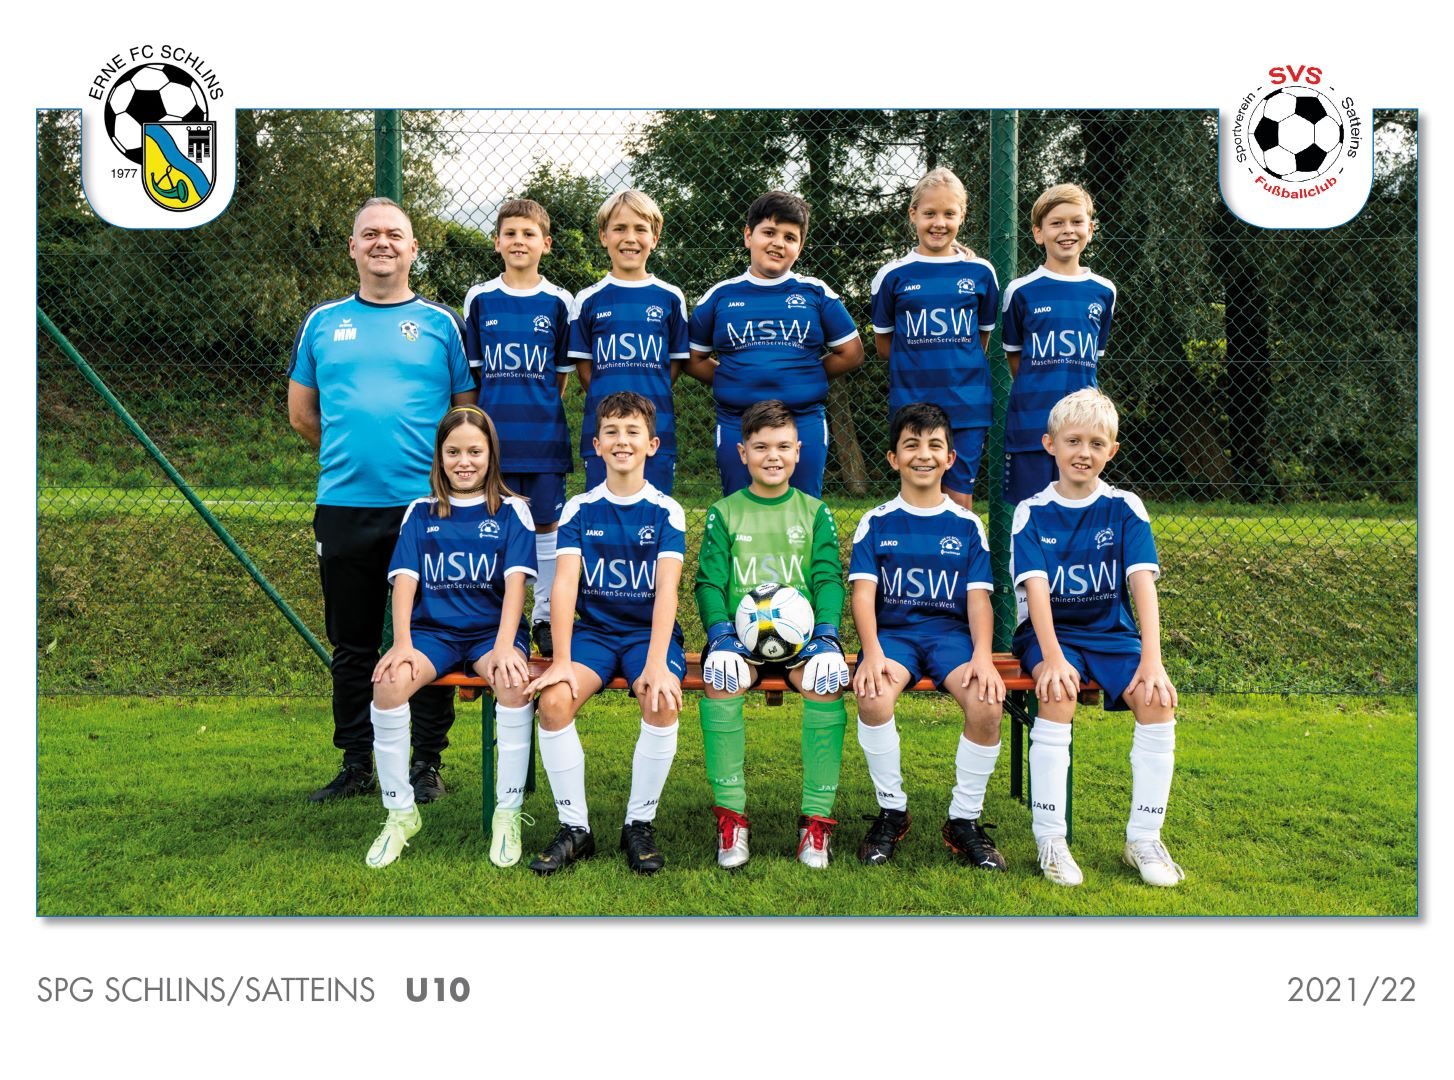 ERNE FC Schlins - U10